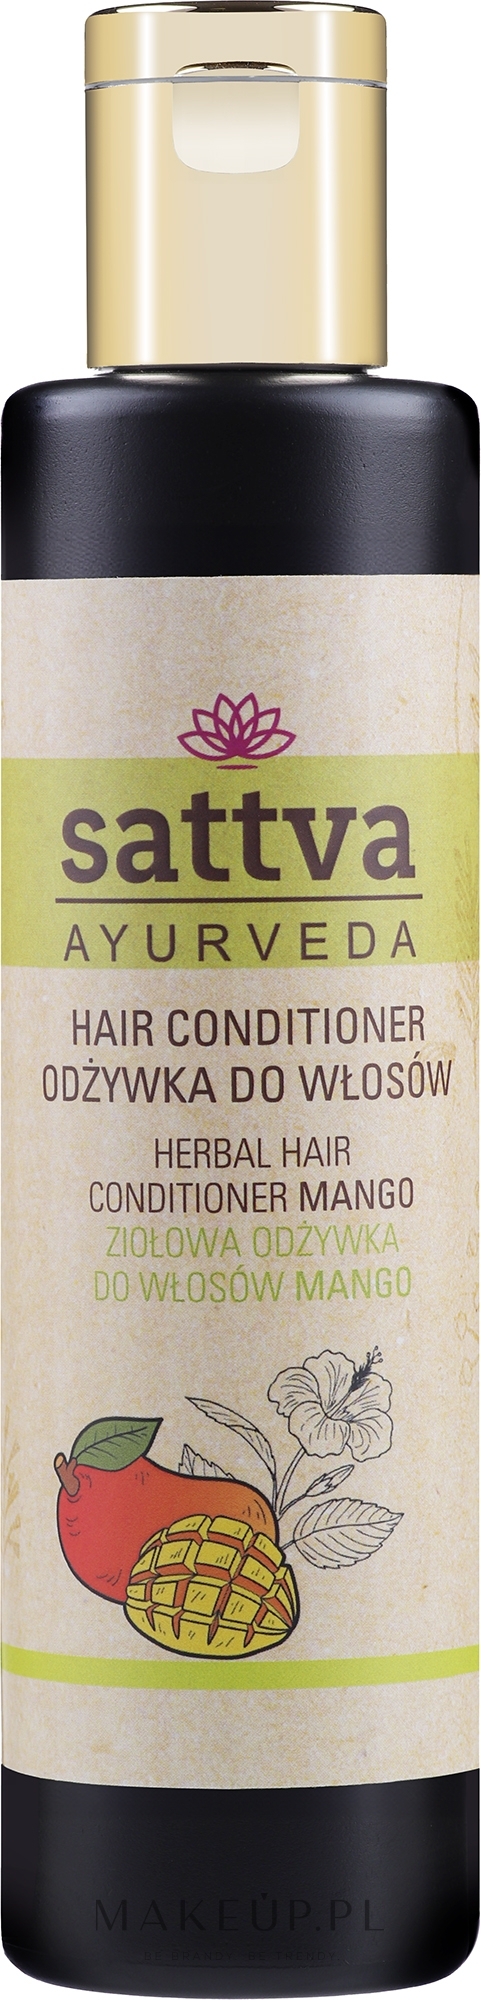 Ziołowa odżywka do włosów Mango - Sattva Herbal Conditioner Mango — Zdjęcie 210 ml